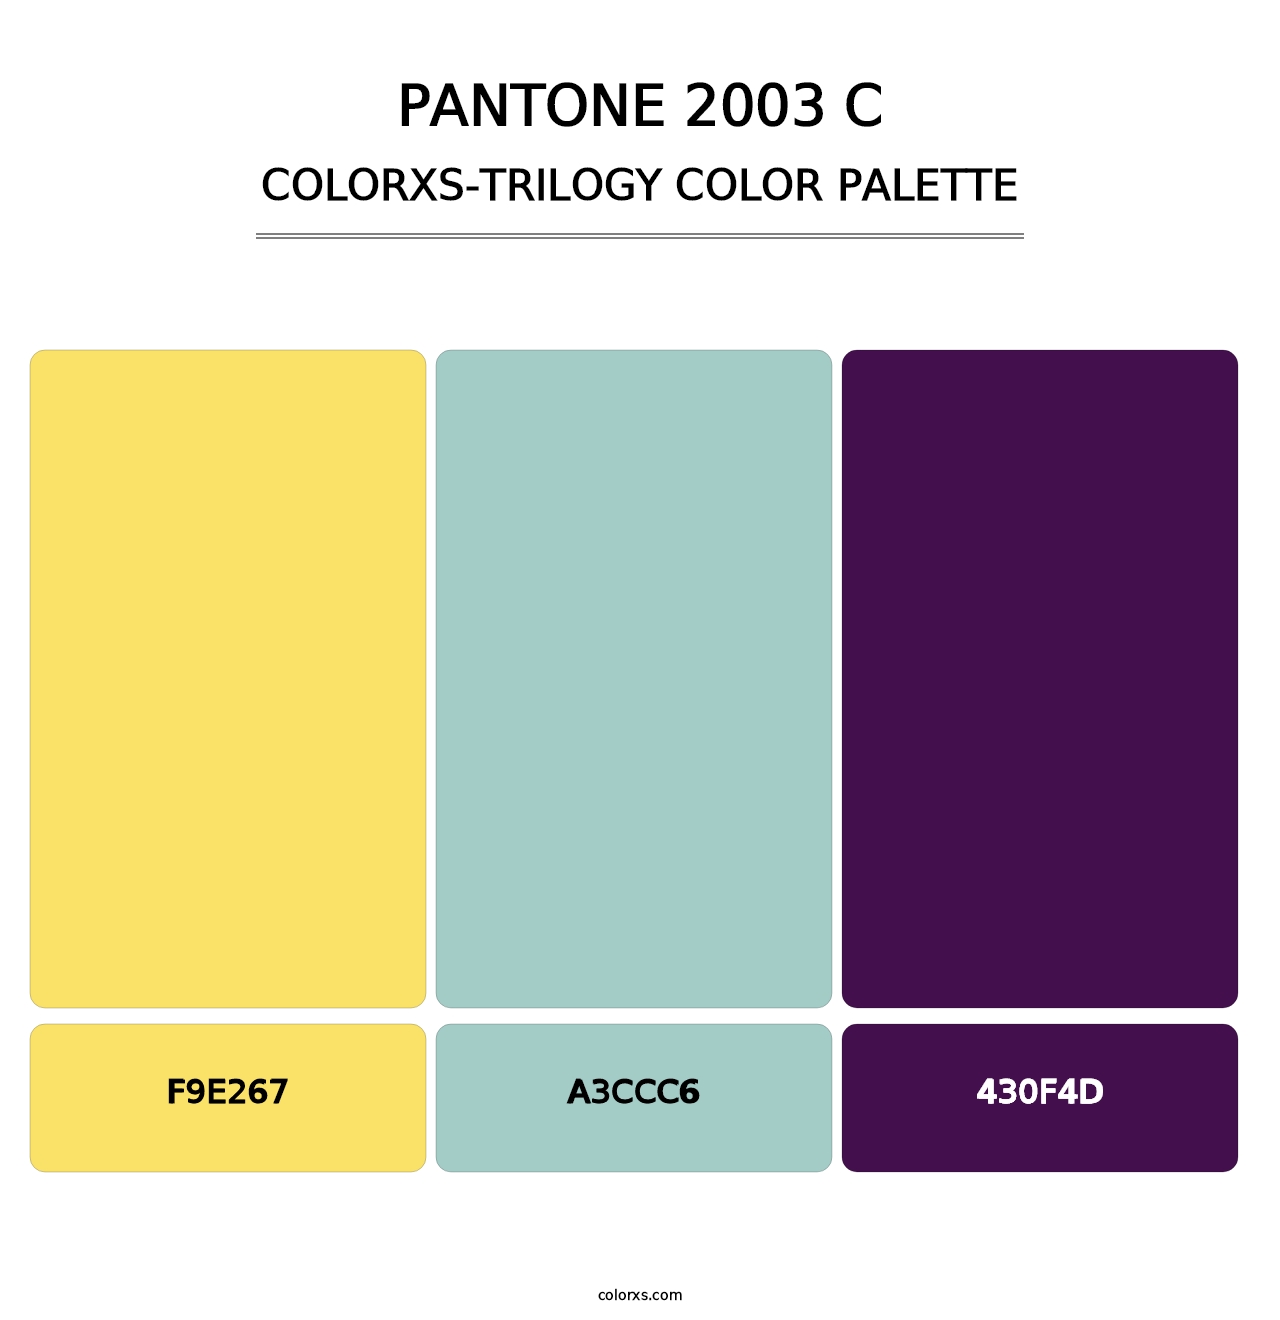 PANTONE 2003 C - Colorxs Trilogy Palette